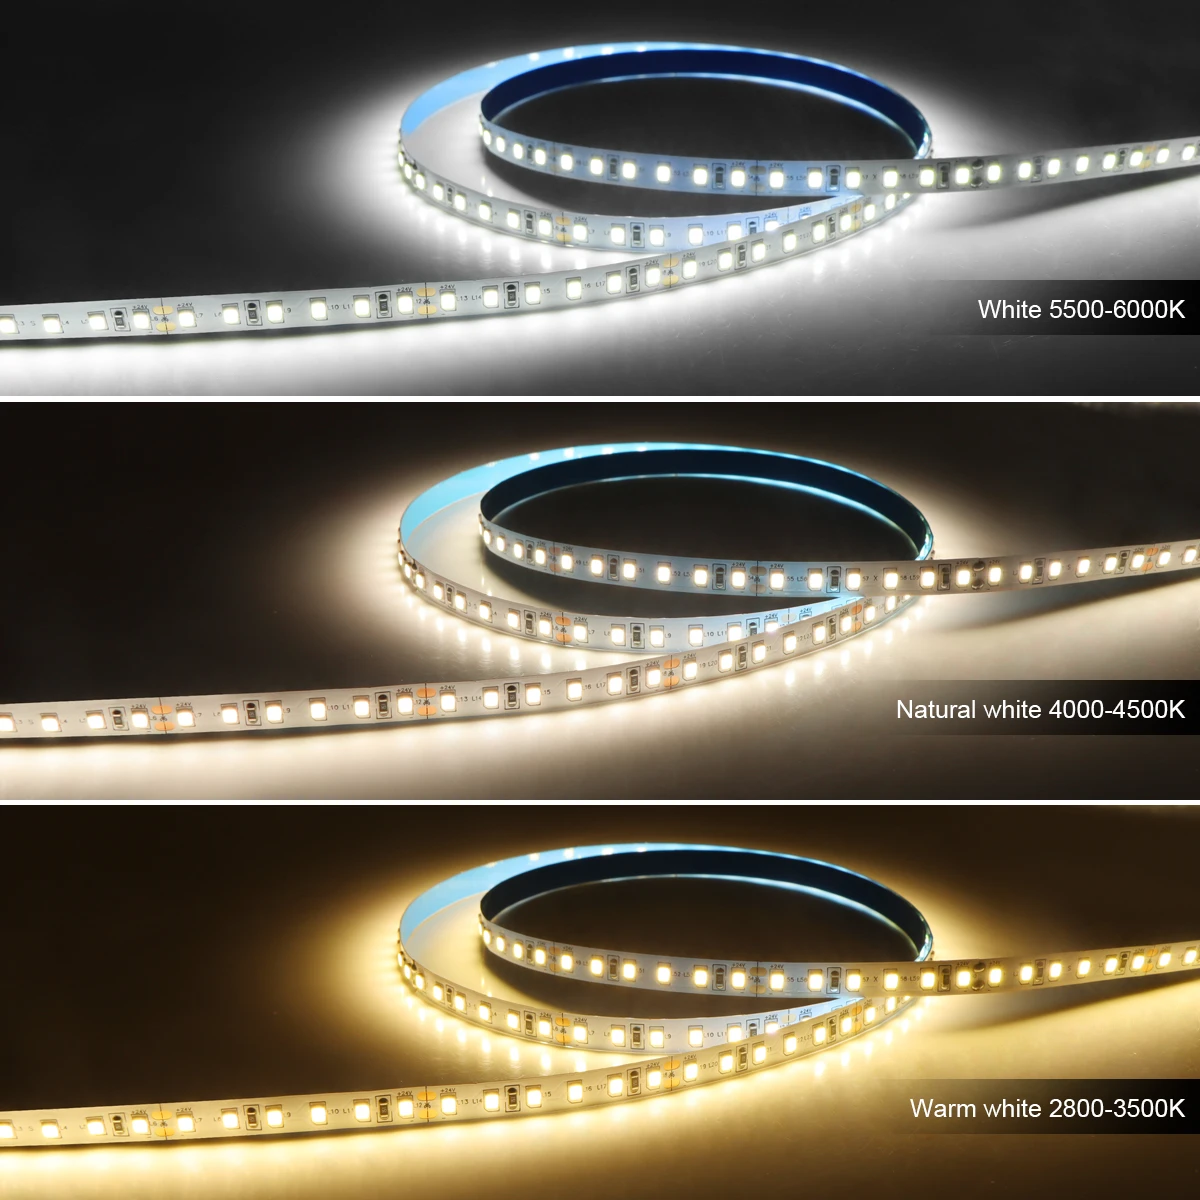 12V White LED Strip Light - 1000 Lumens